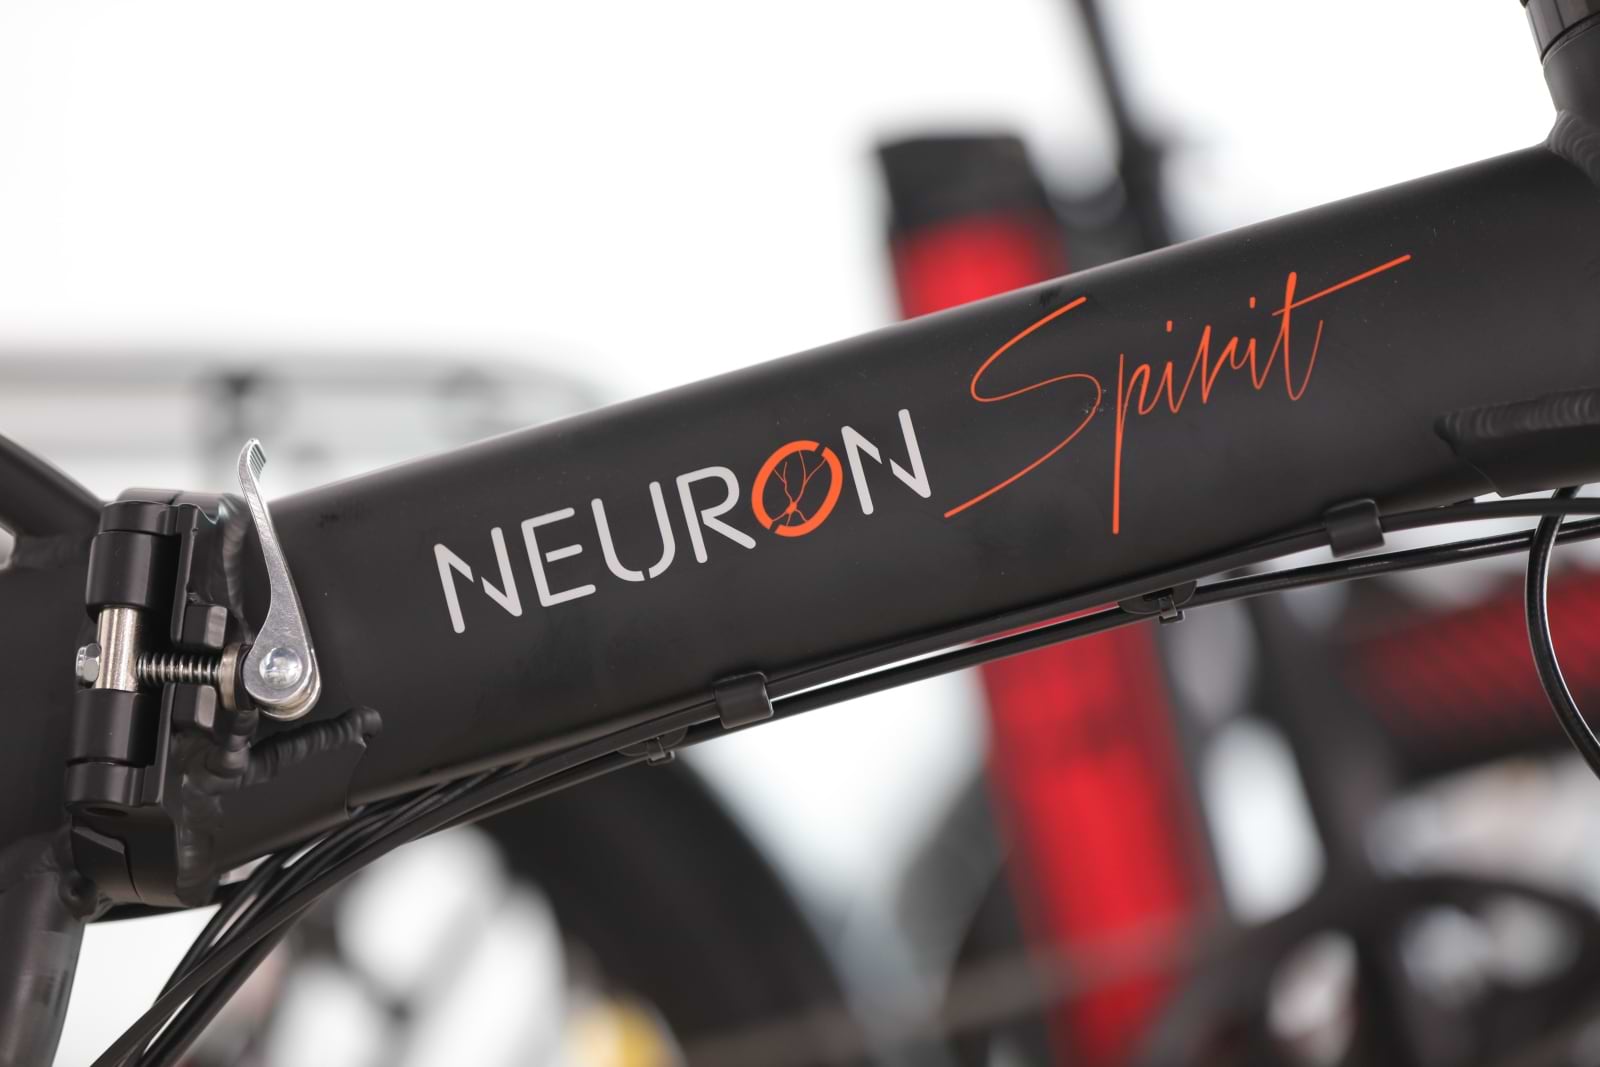  אופניים חשמליים Neuron Spirit - צבע שחור עם ג'אנטים לבנים שנה אחריות ע"י היבואן הרשמי